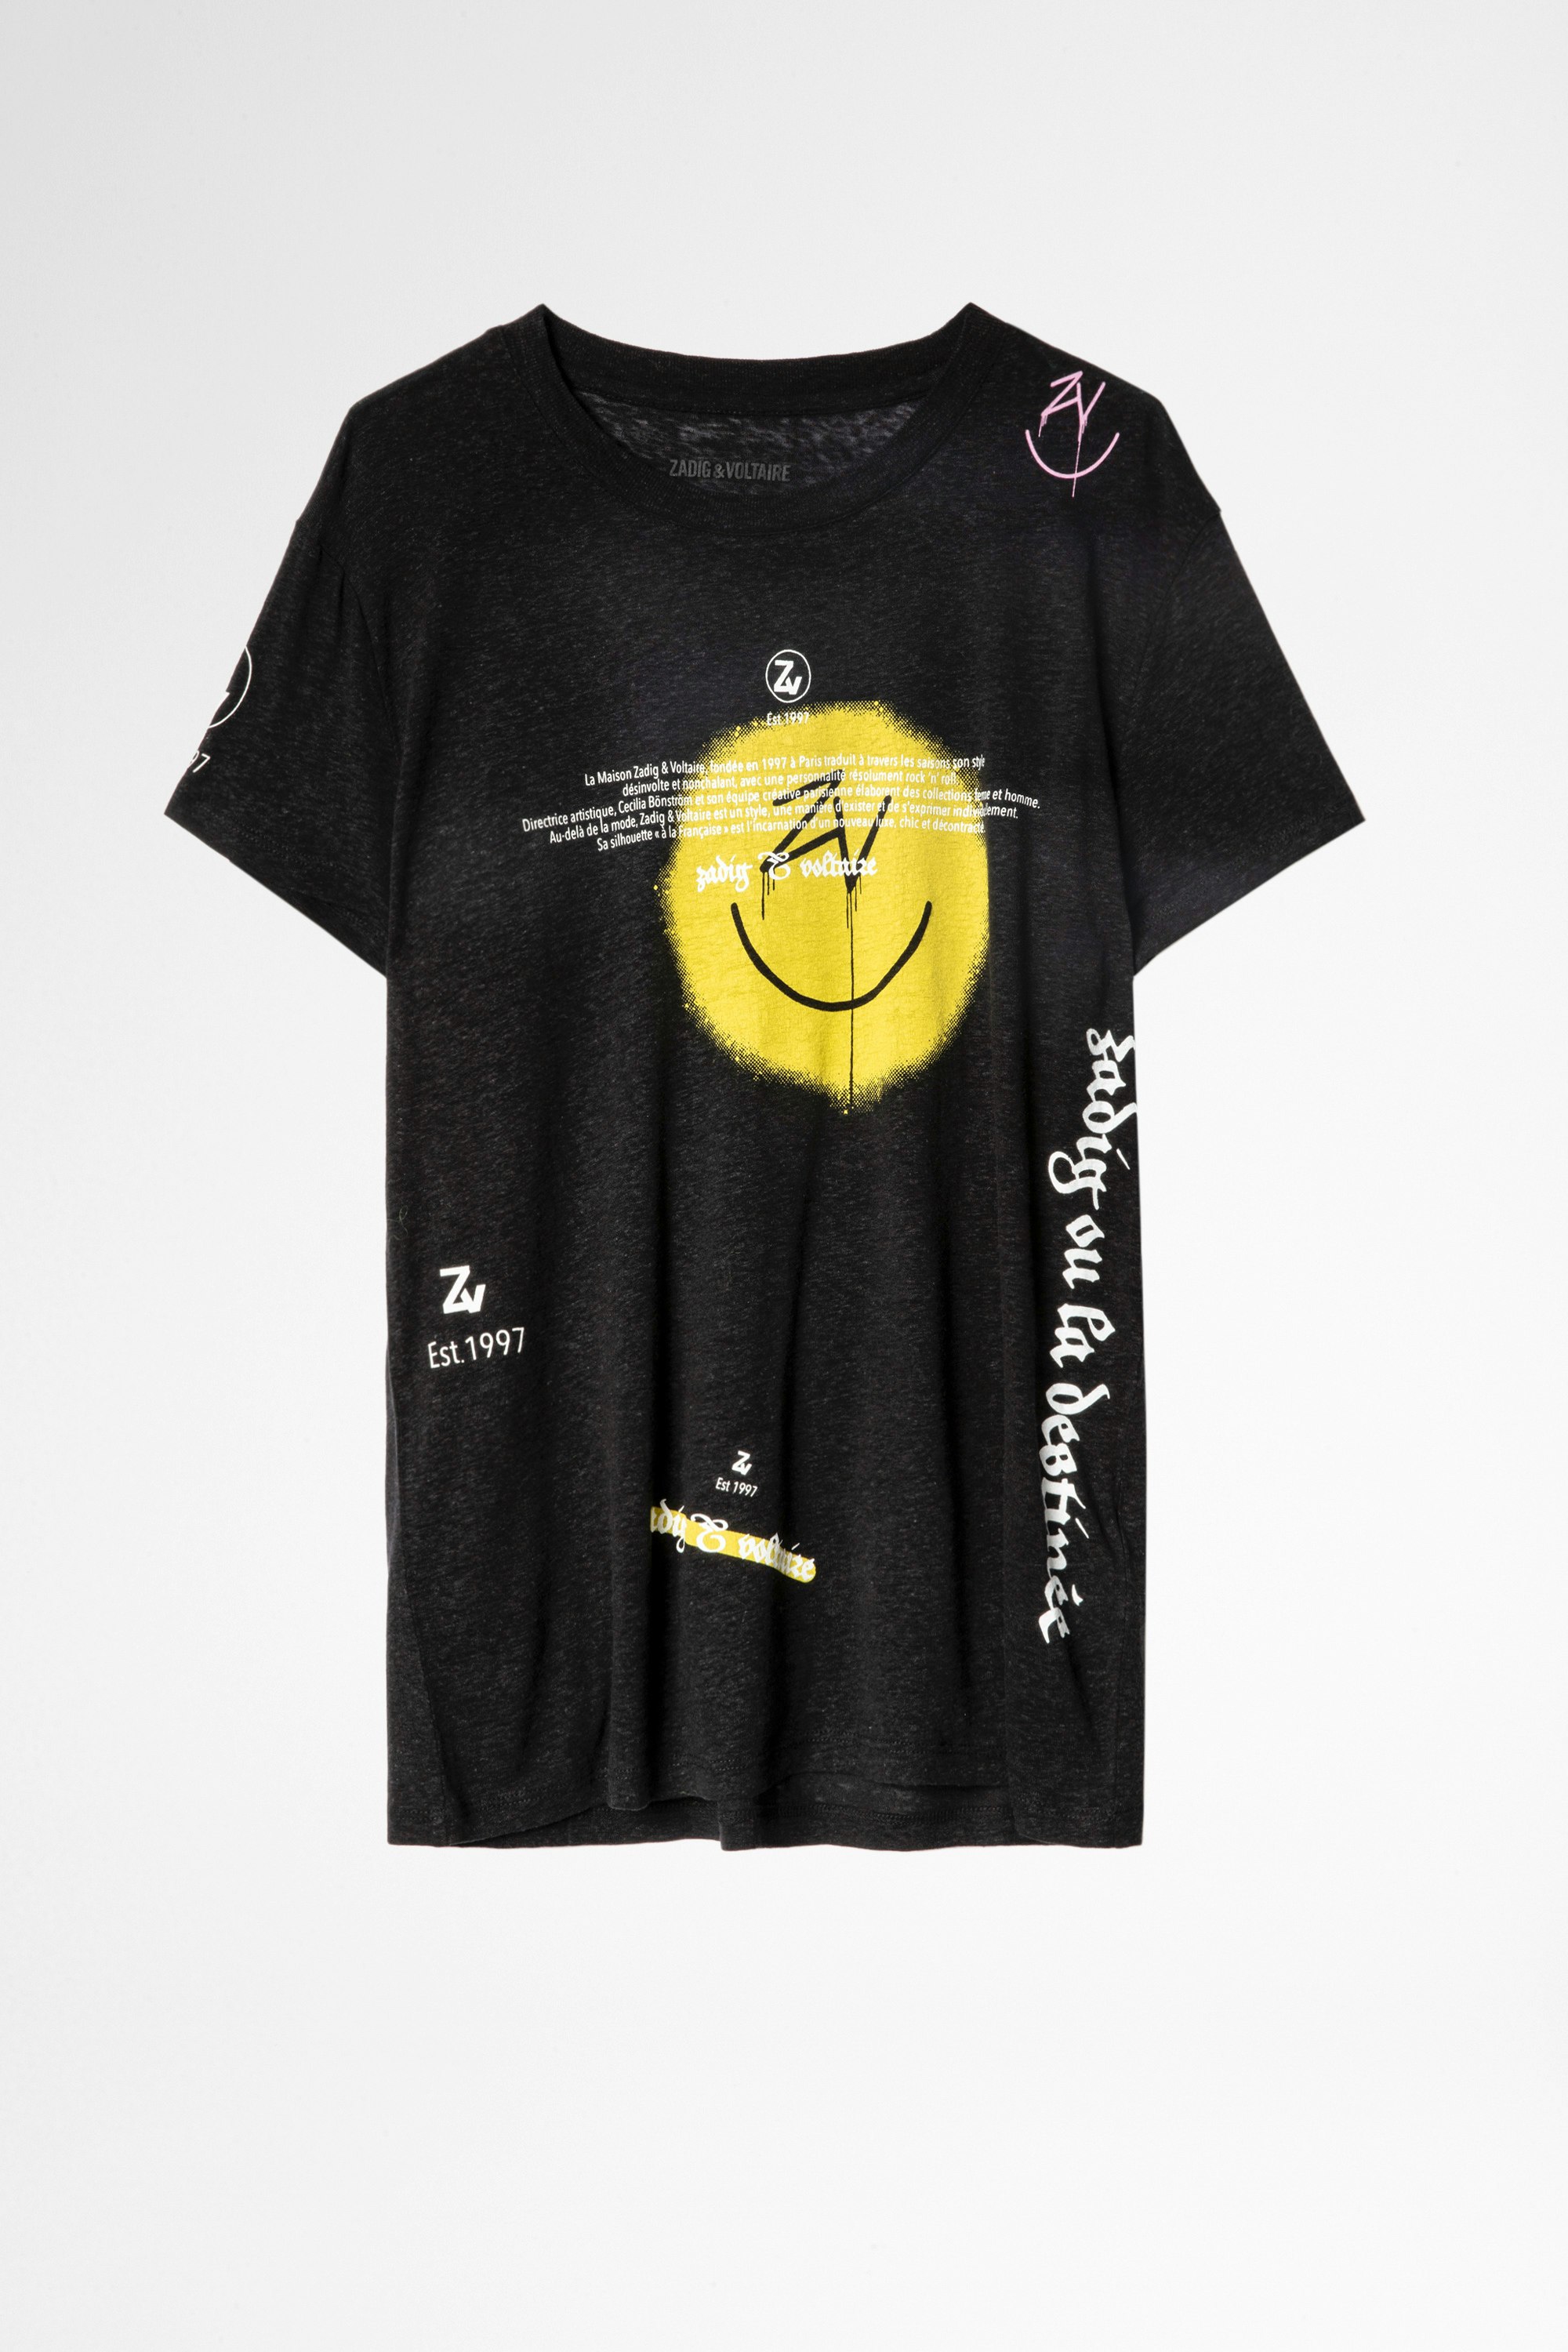 Camiseta Walk Multicusto Lino Camiseta negra de mujer con estampado Happy